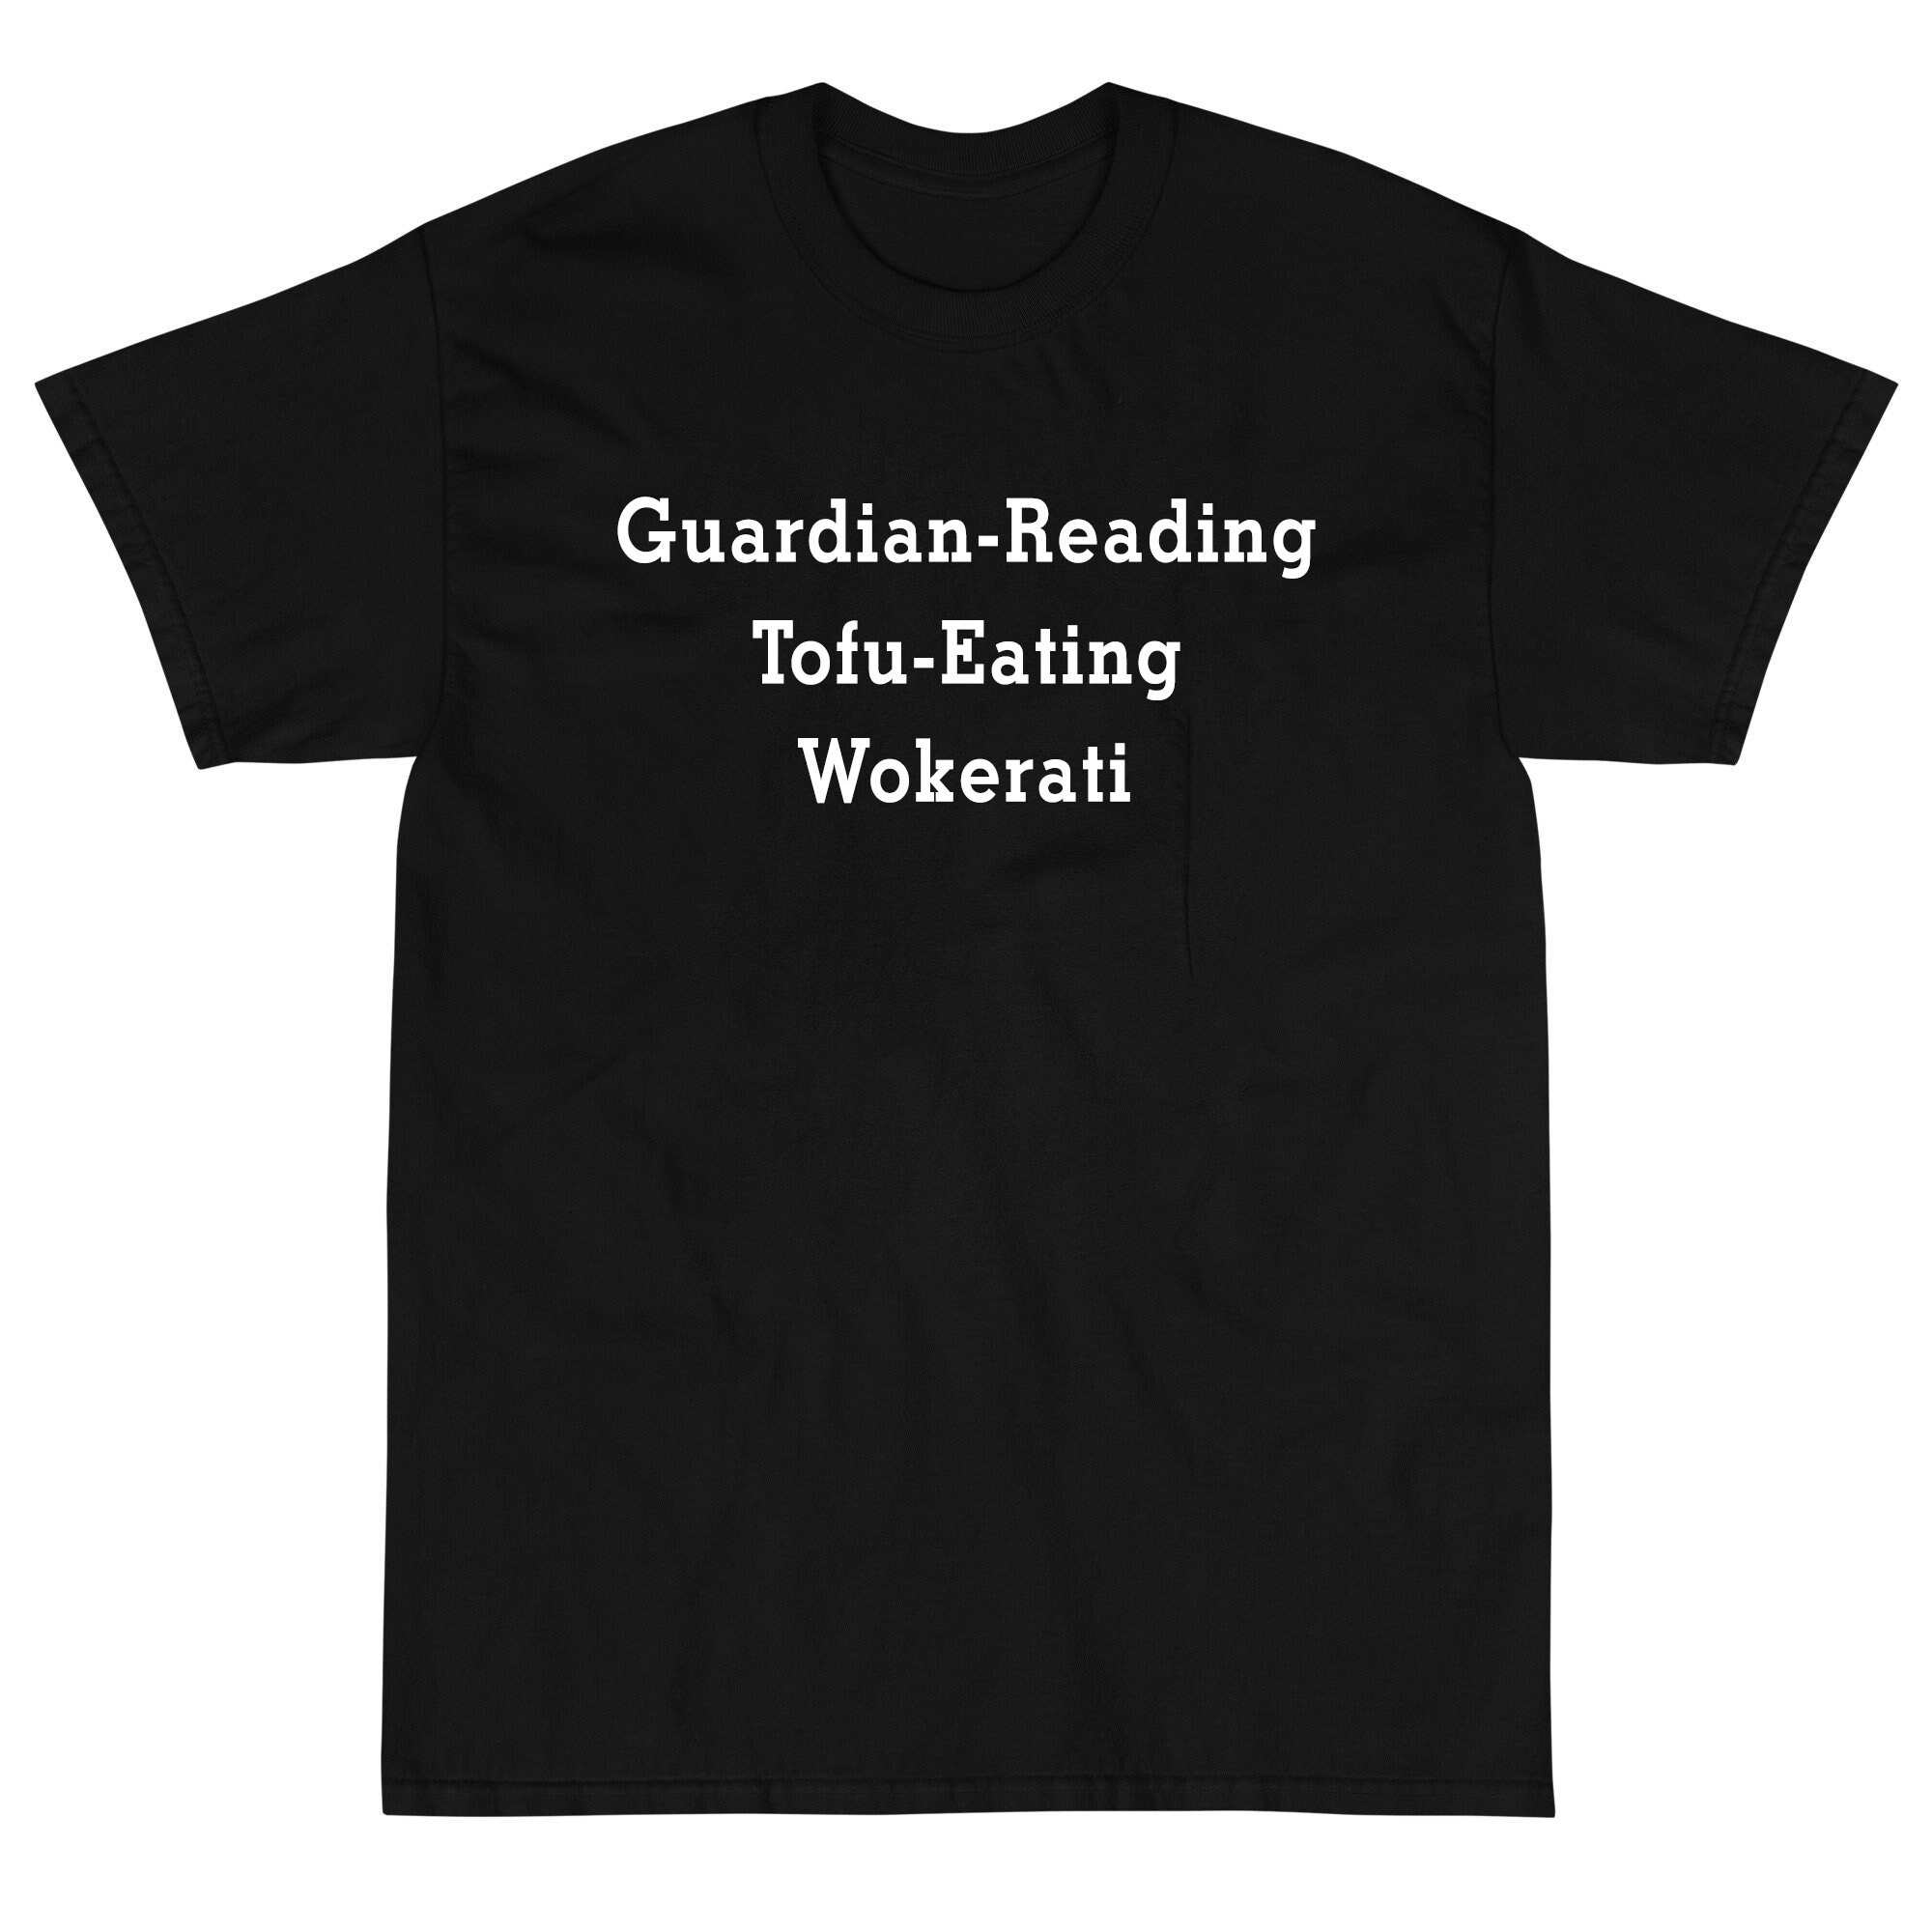 Discover Guardian-Reading Tofu-Eating Wokerati T-Shirt, Proud Member Of The Tofu Eating Wokerati T-Shirts